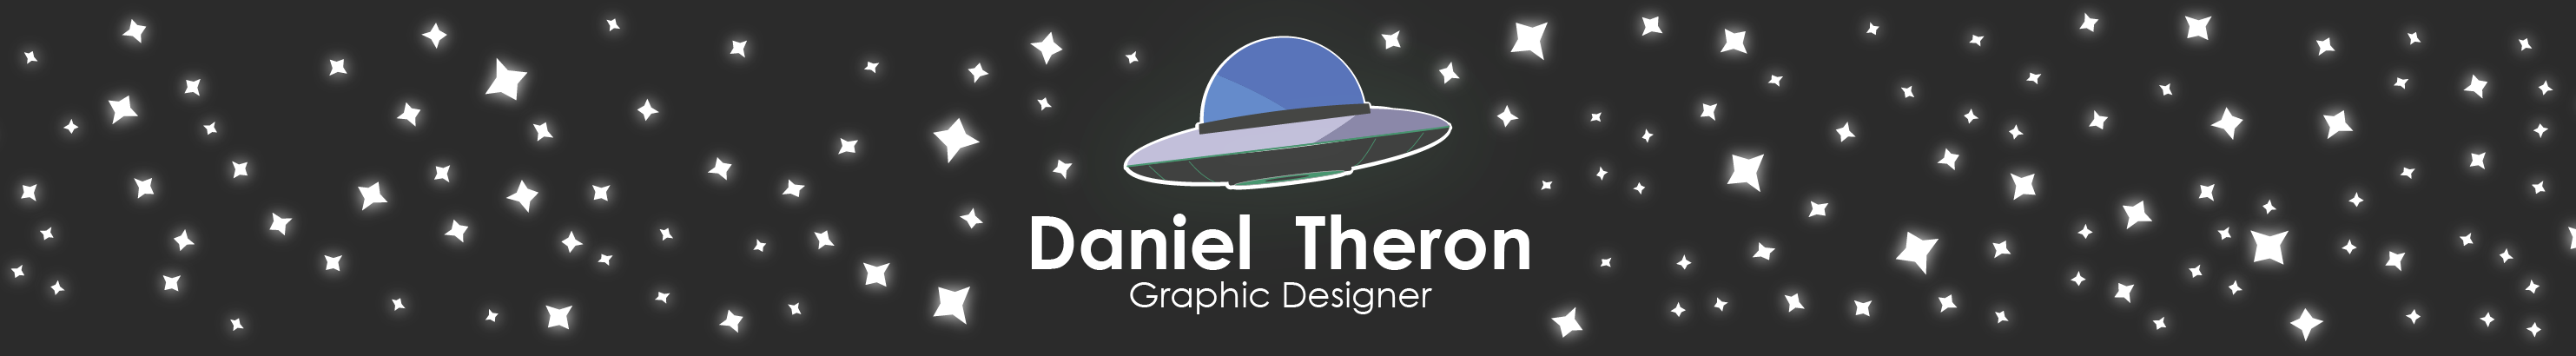 Banner de perfil de Daniel Theron